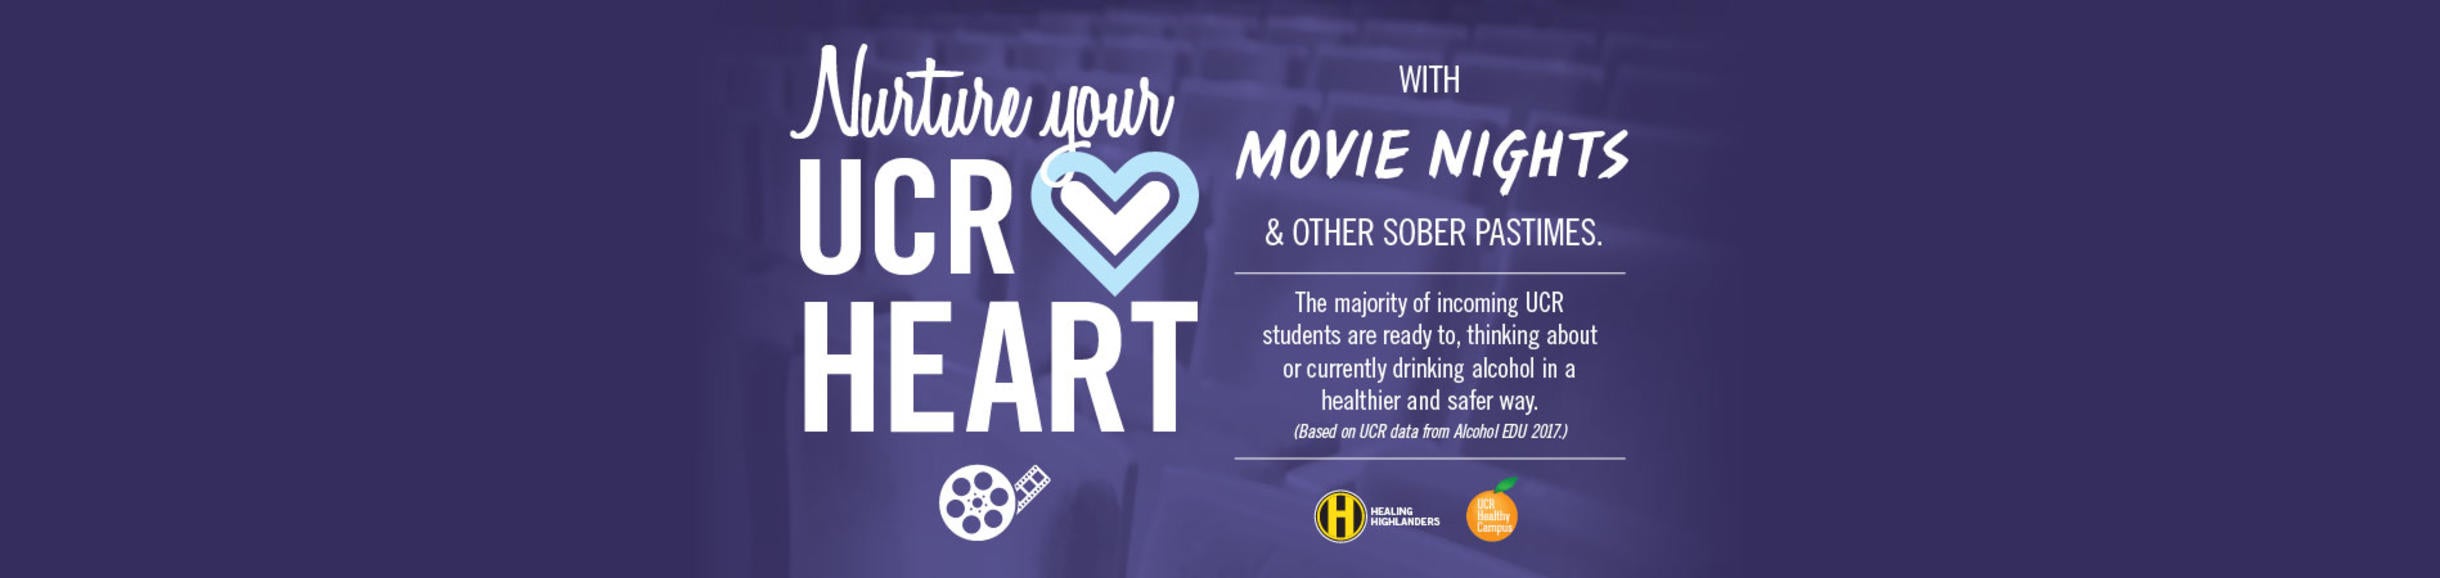 Nurture Your UCR Heart - Movie Nights